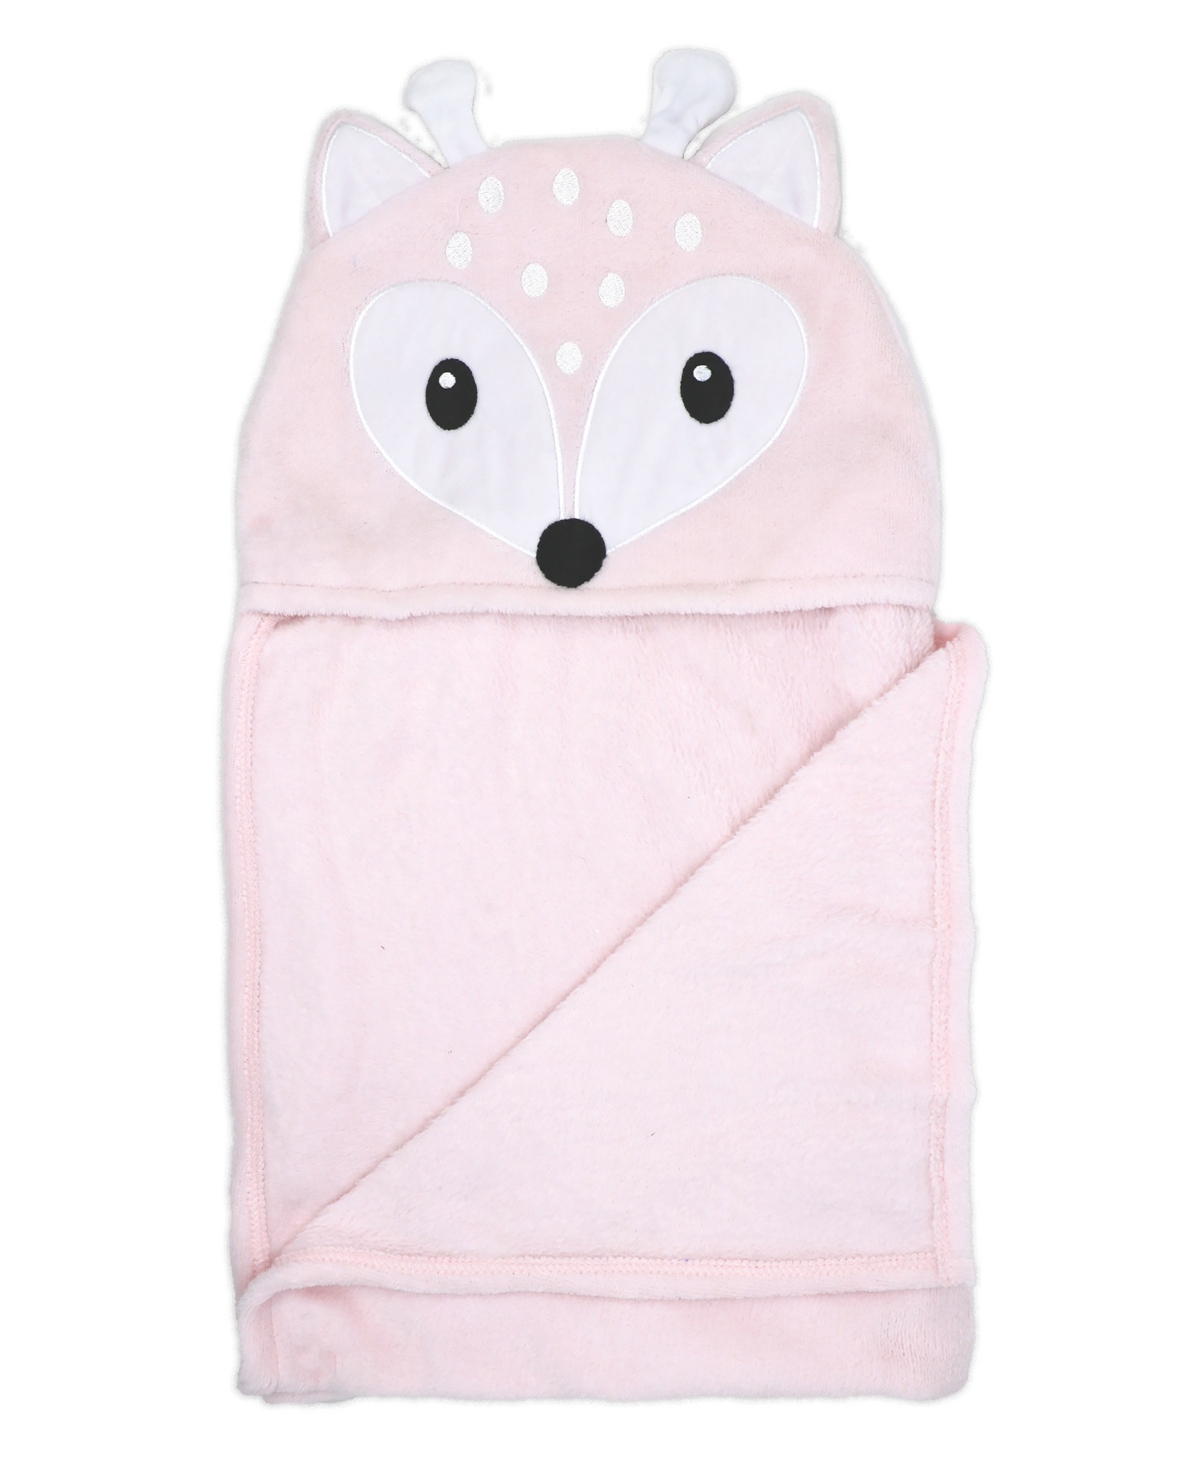 3 Stories Trading Baby Girls Deer Hooded Blanket In Pink